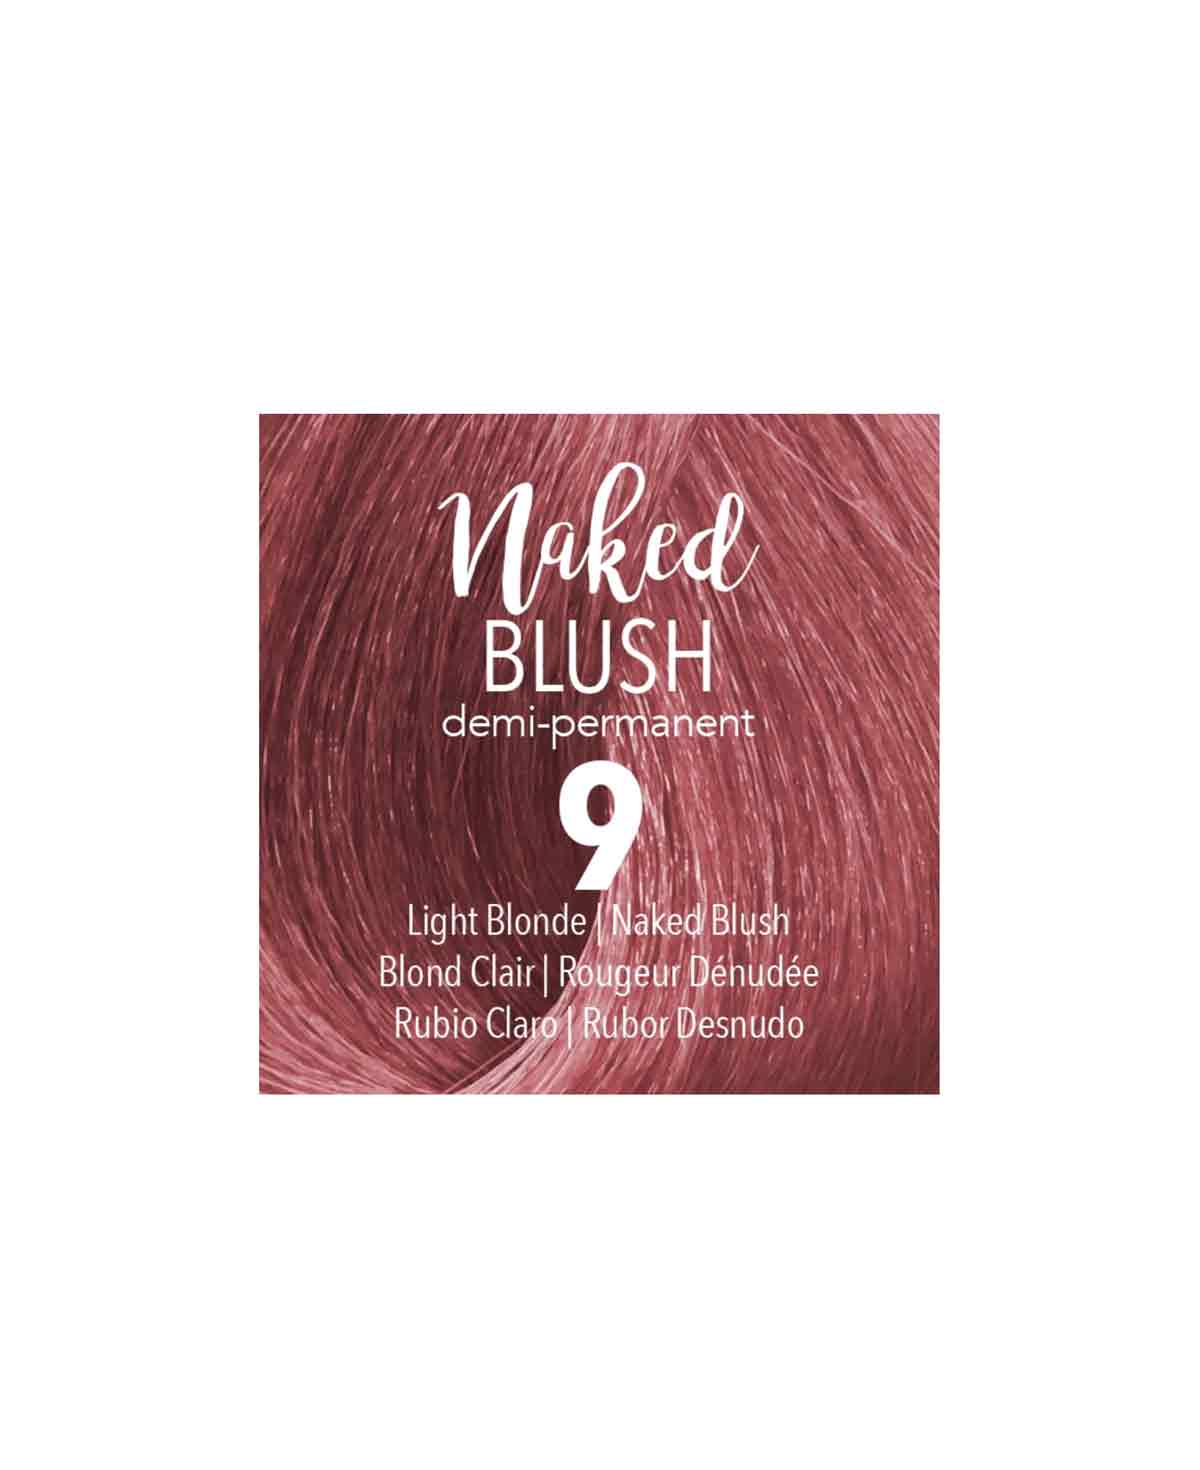 Mydentity - 9 Light Blonde Naked Blush Demi-P